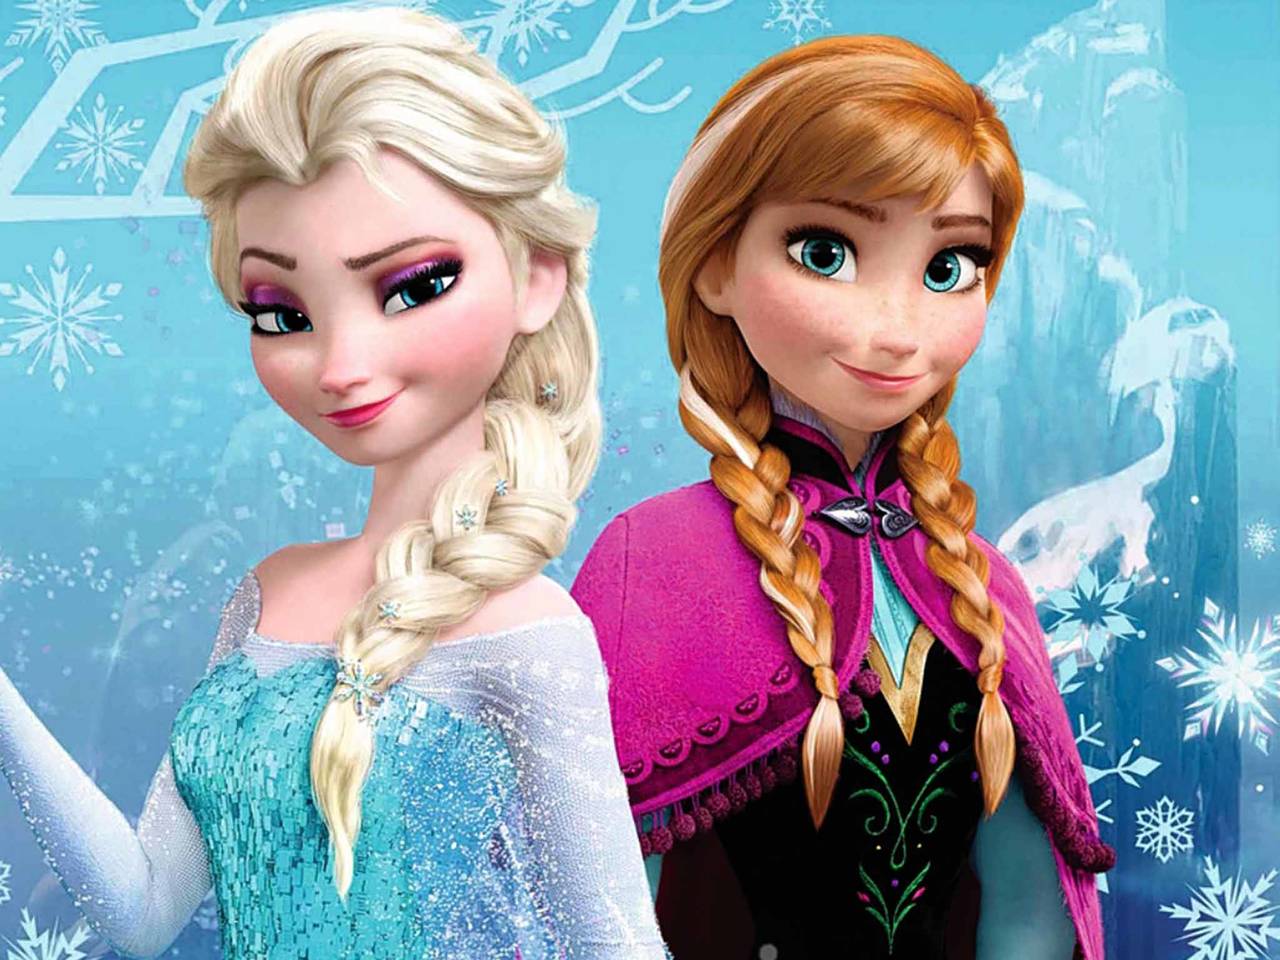 Secuela. Frozen podría ser la primera película de Disney con una relación amorosa entre personas del mismo sexo.